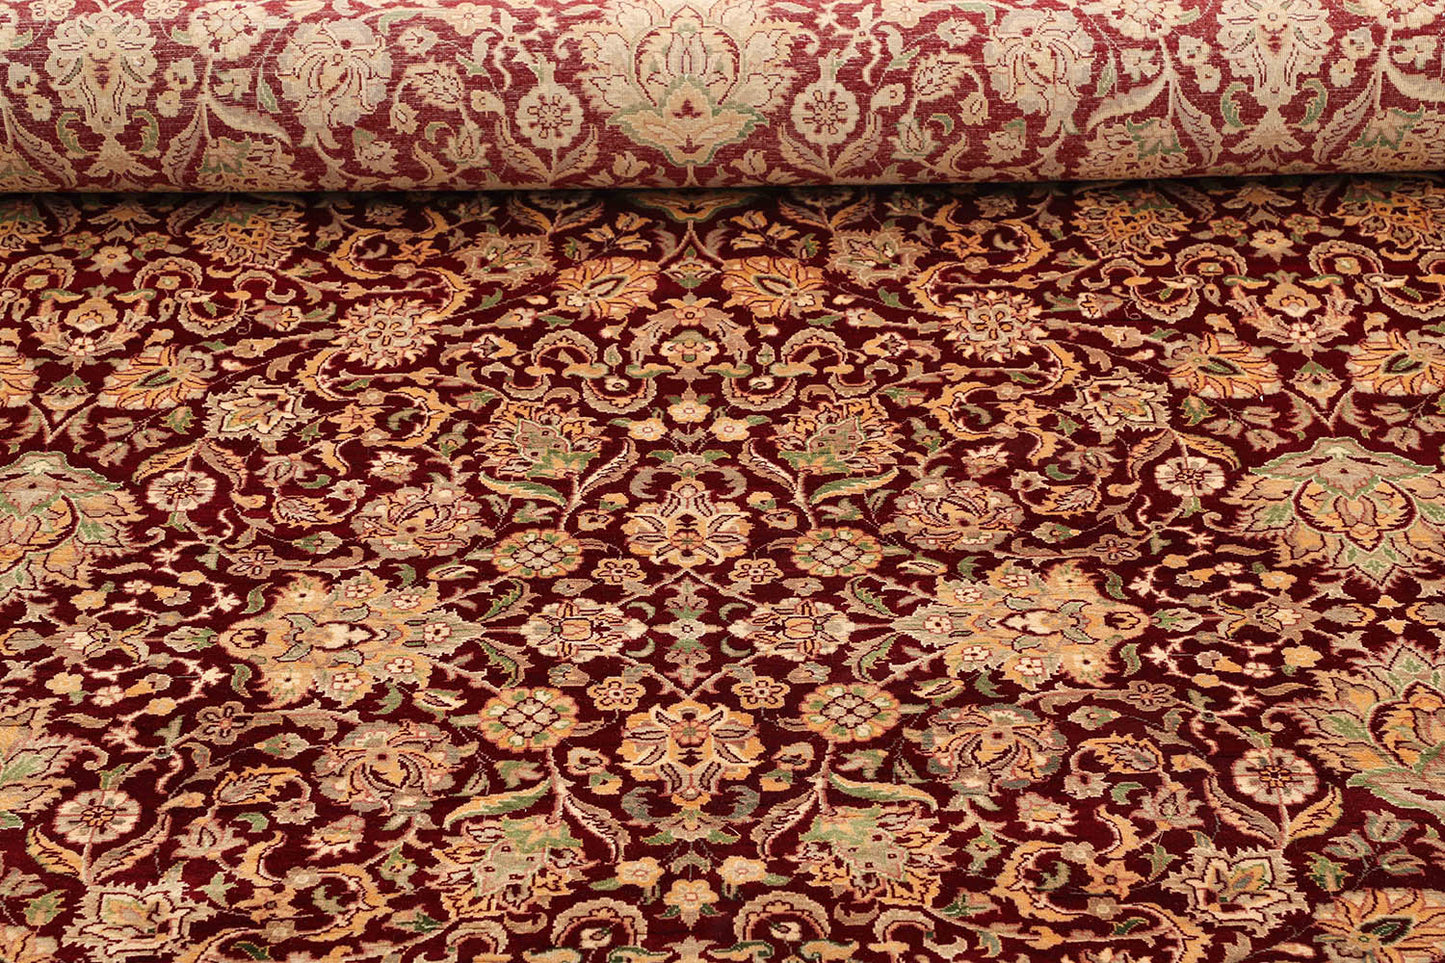 Tabriz Area Rug: The Red Elegance You Deserve